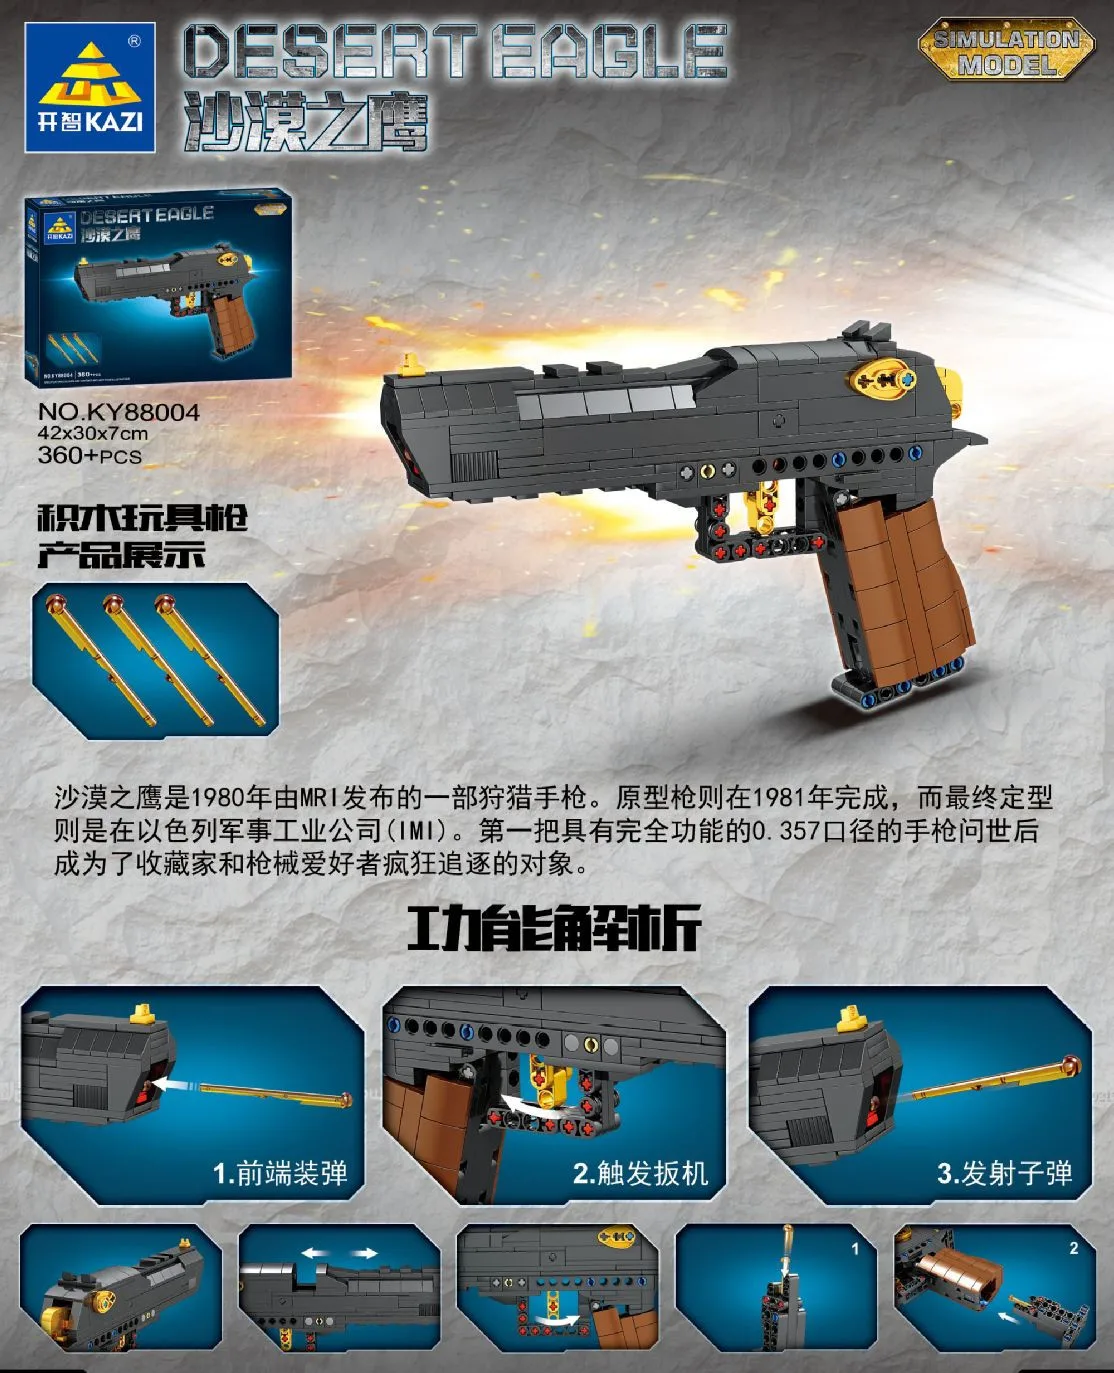 

City Police SWAT Desert Eagle Pistol WW2 Gun Model Building Blocks Military High-Tech Gun Series Bricks Gifts Toys for Children